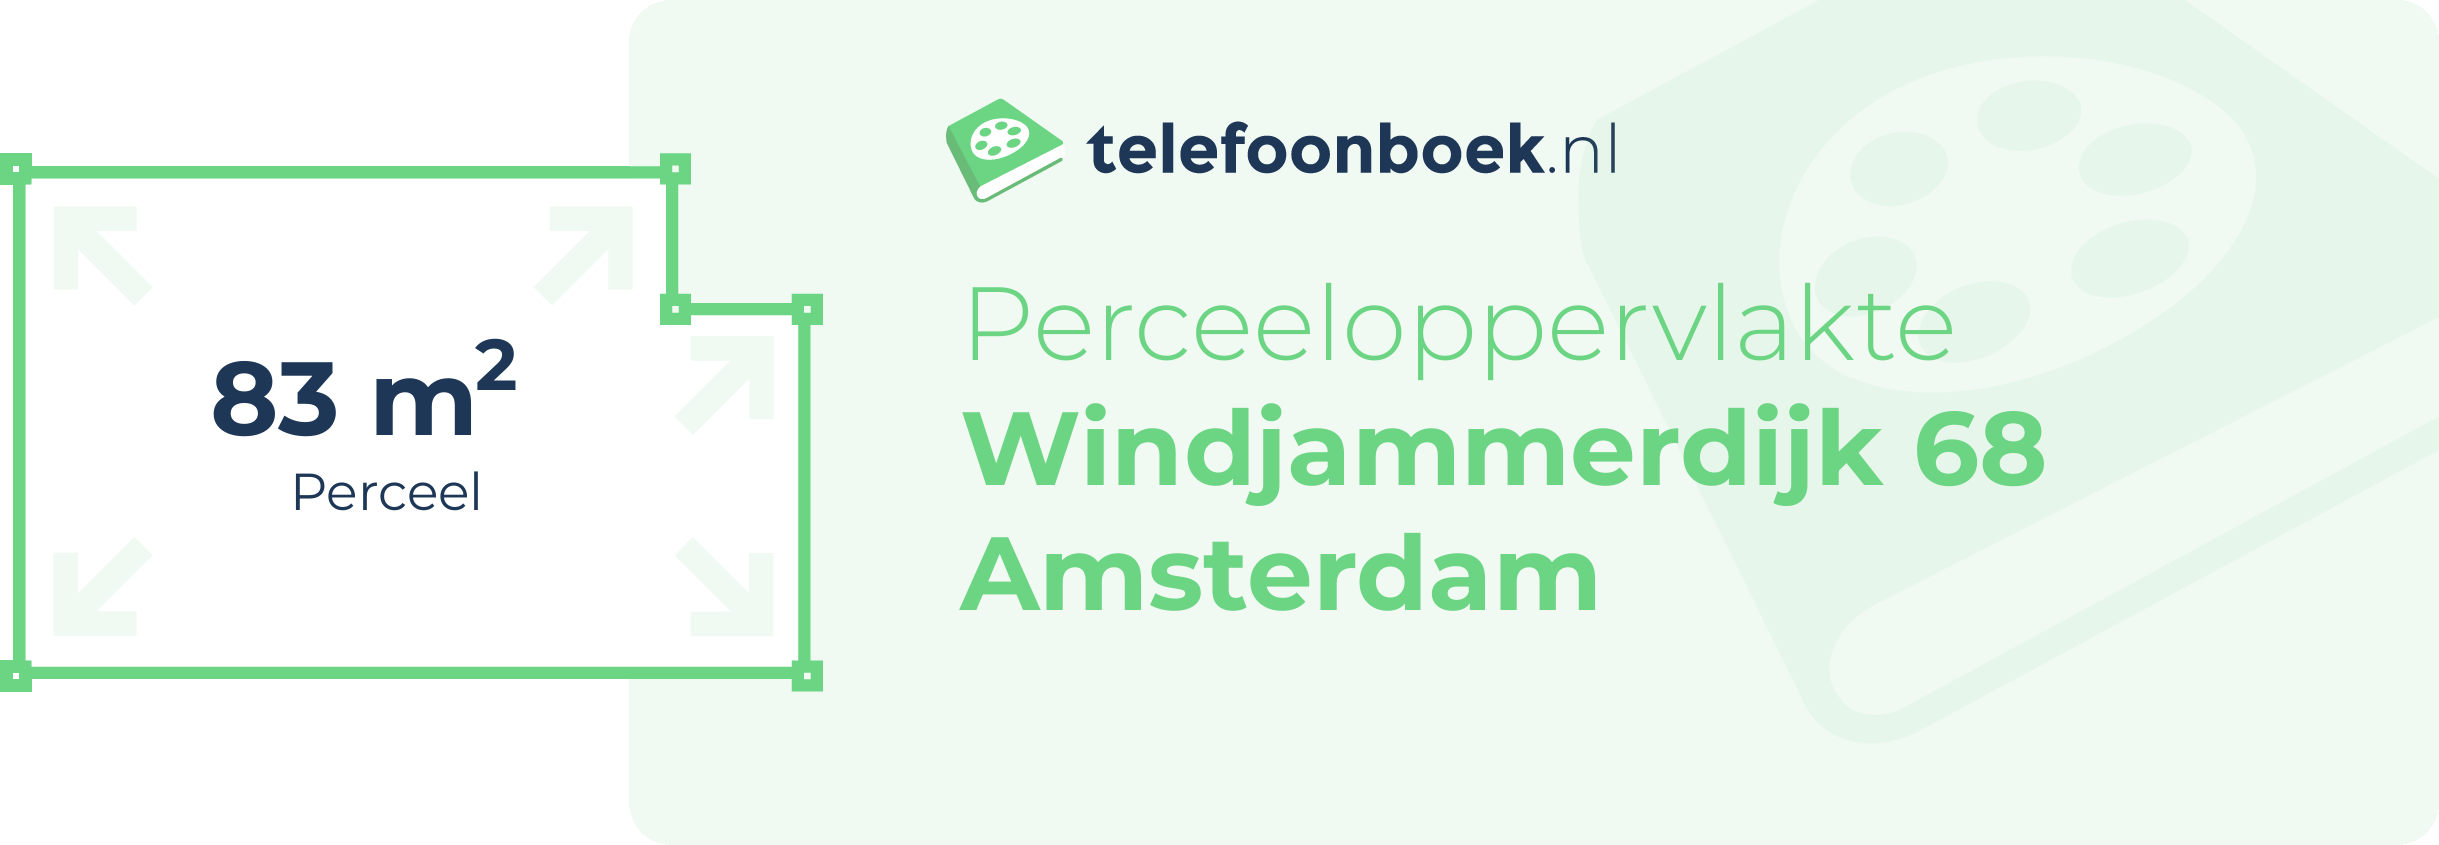 Perceeloppervlakte Windjammerdijk 68 Amsterdam